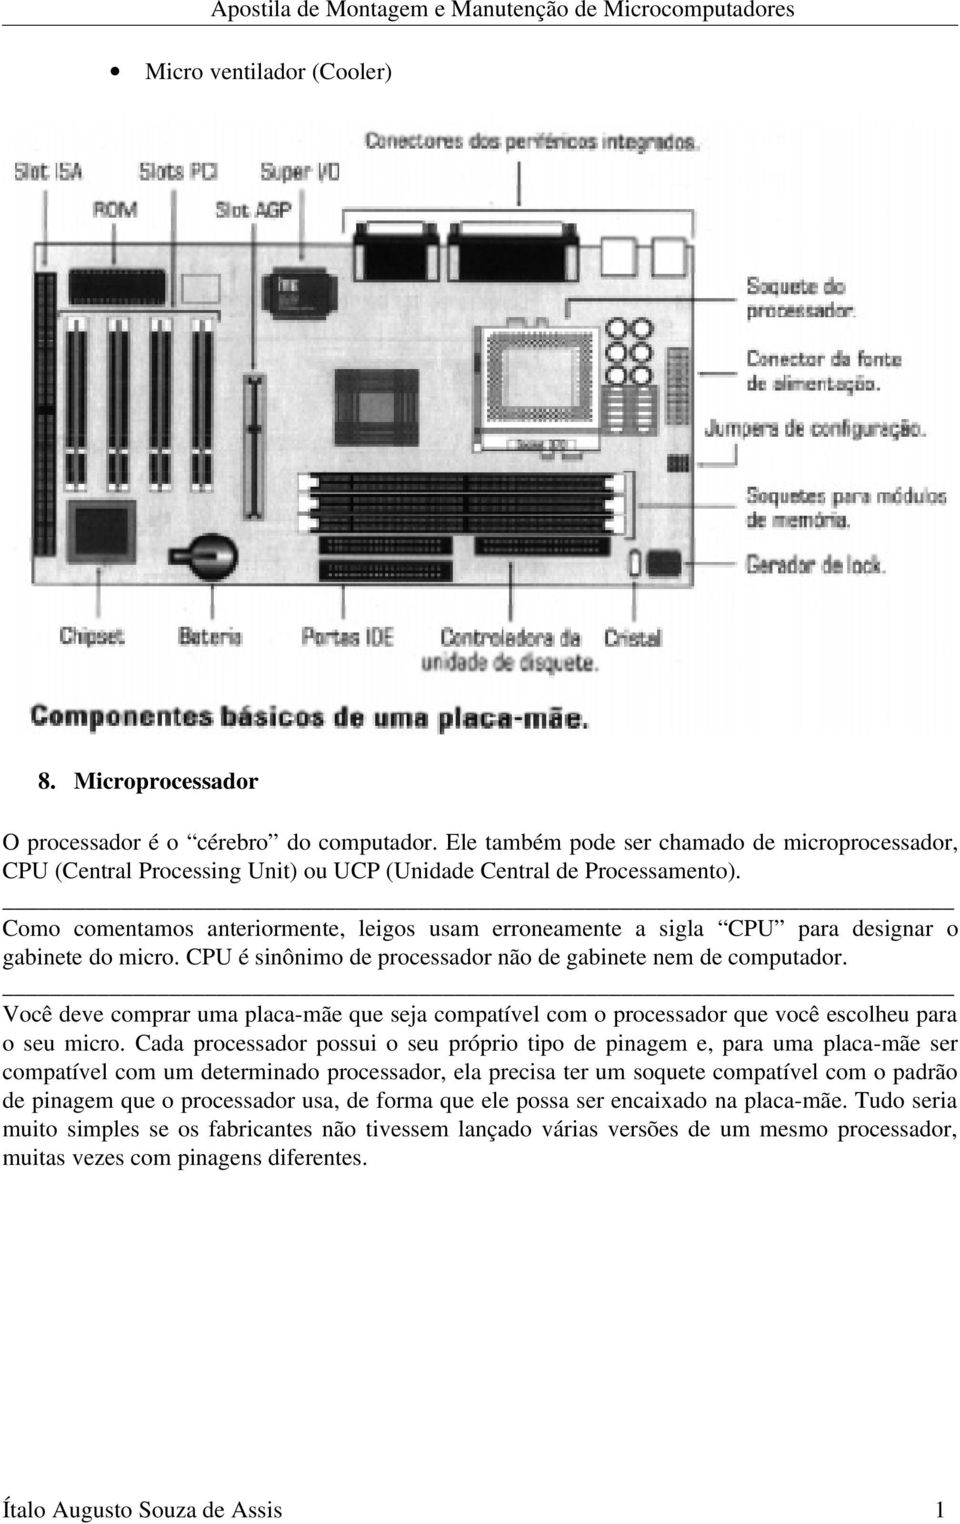 Como comentamos anteriormente, leigos usam erroneamente a sigla CPU para designar o gabinete do micro. CPU é sinônimo de processador não de gabinete nem de computador.